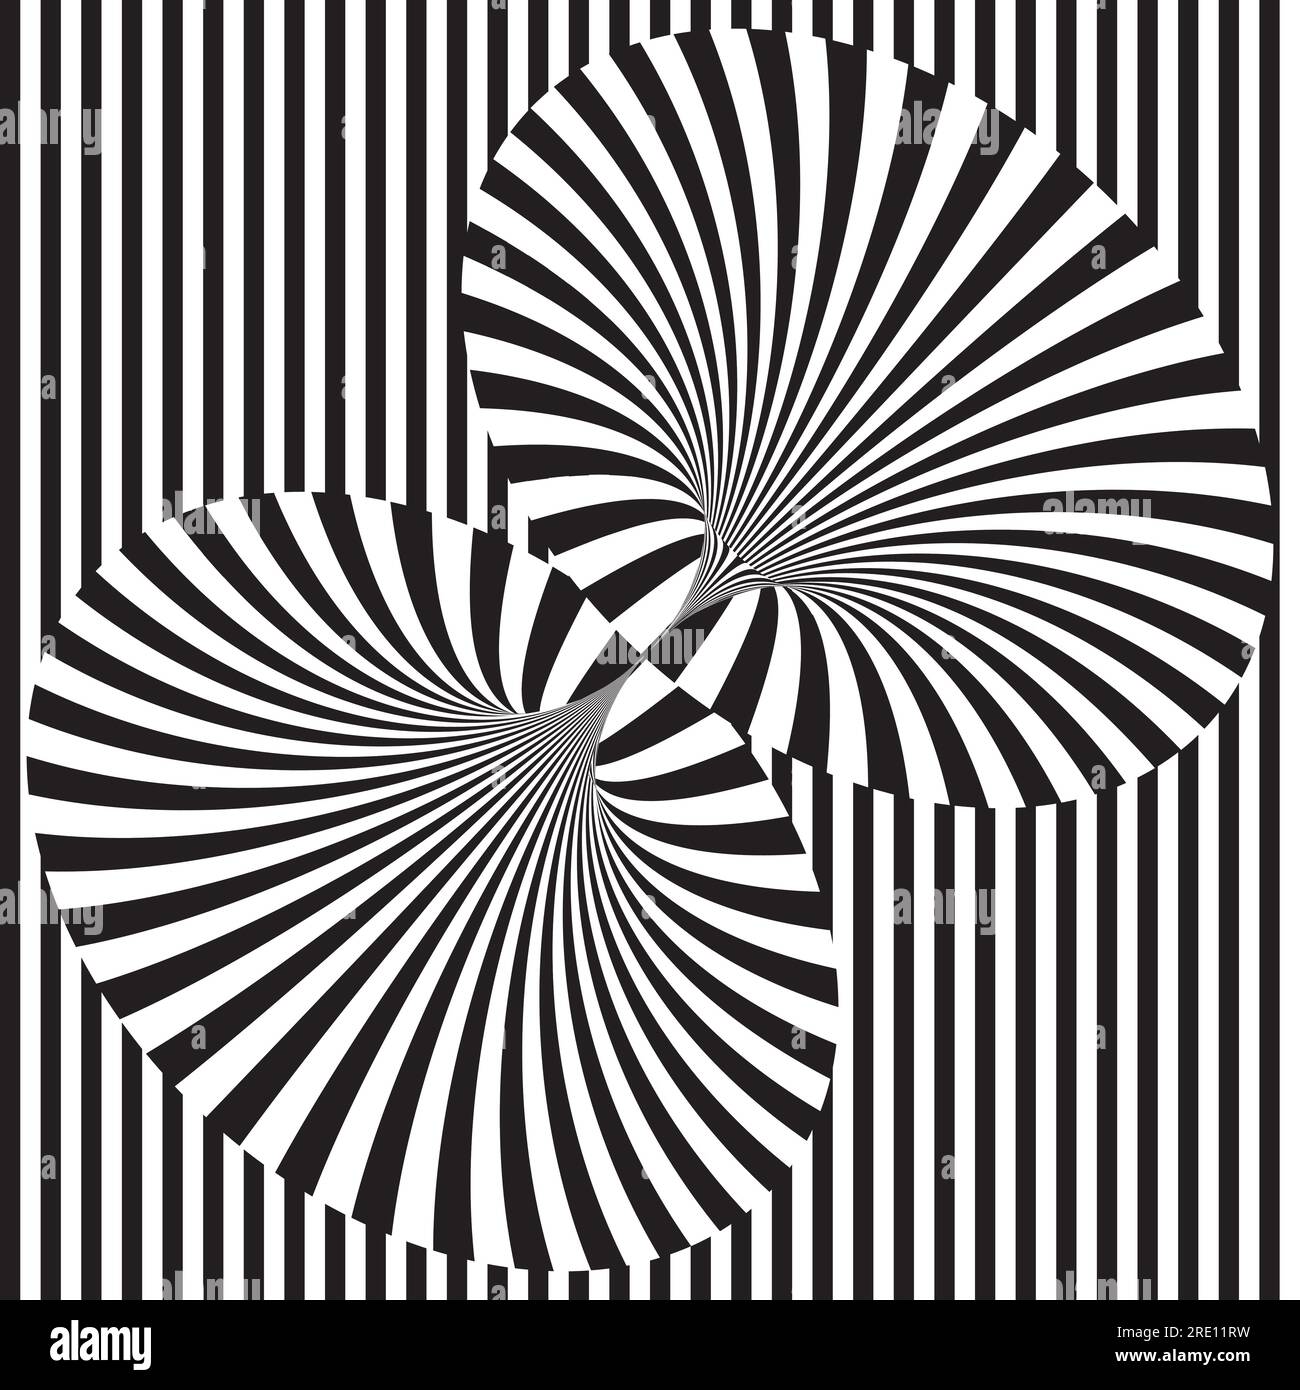 Abstrakter Hintergrund mit einer schwarz-weißen optischen Täuschung im surrealen Design Stock Vektor